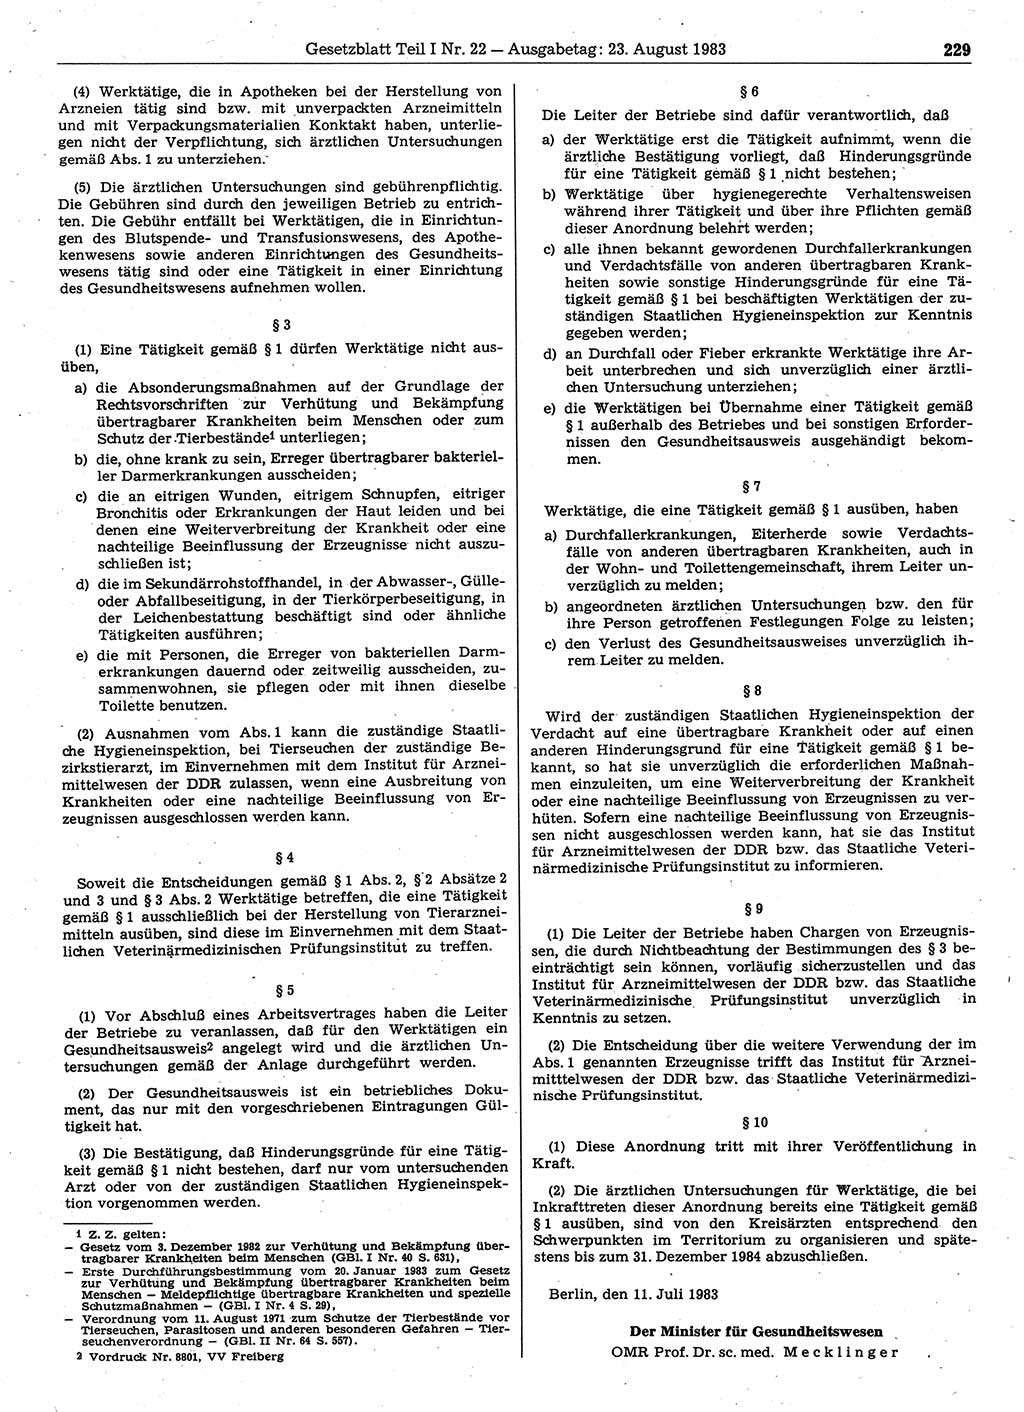 Gesetzblatt (GBl.) der Deutschen Demokratischen Republik (DDR) Teil Ⅰ 1983, Seite 229 (GBl. DDR Ⅰ 1983, S. 229)